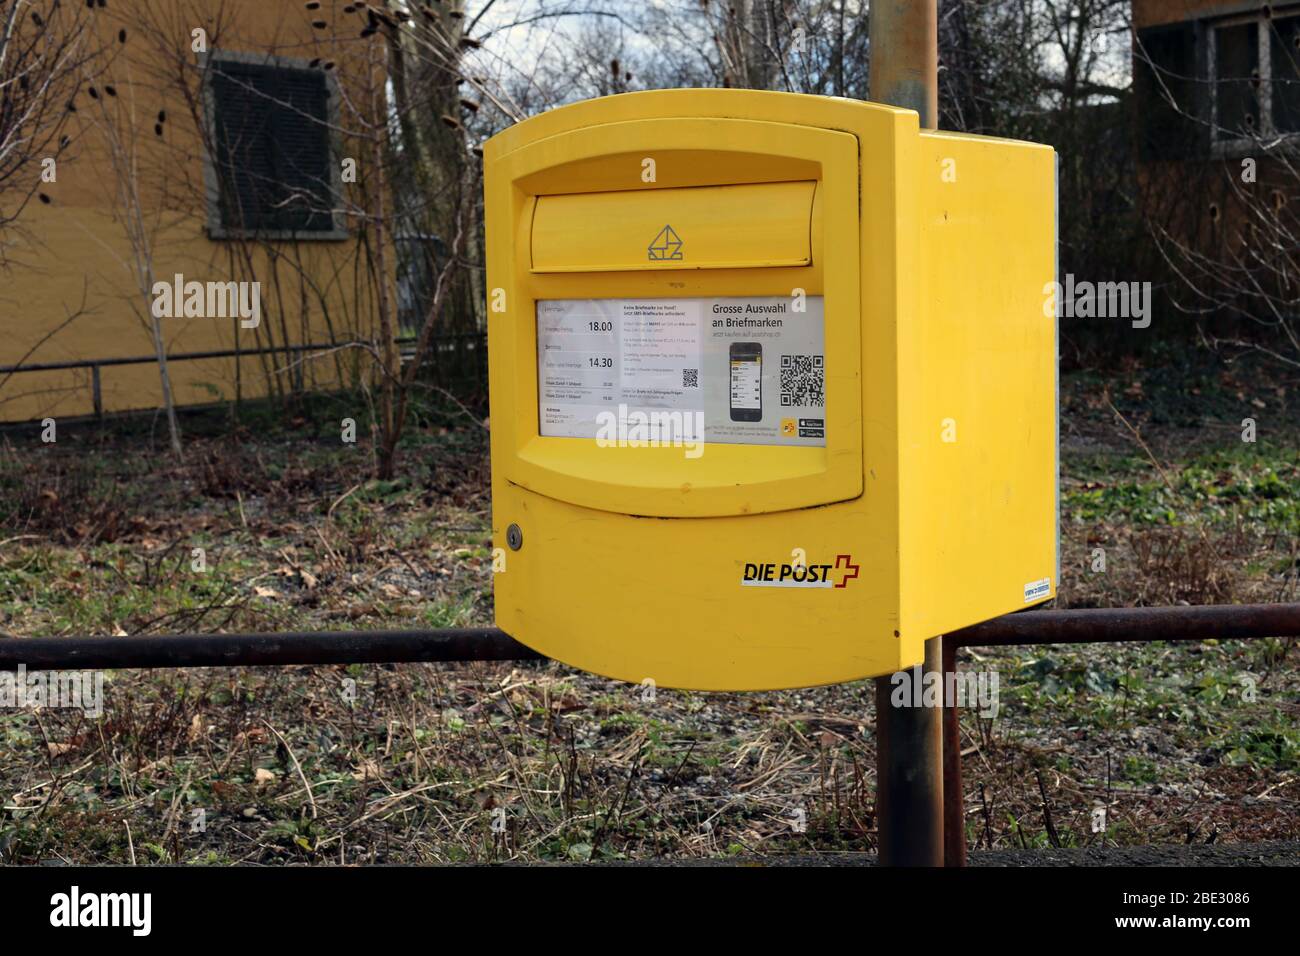 Gelbe 'die Post' Mailbox mit Anweisungen zum Postversand in der Schweiz.  Die Box ist aus Metall und gelb lackiert. Zürich, Schweiz Stockfotografie -  Alamy